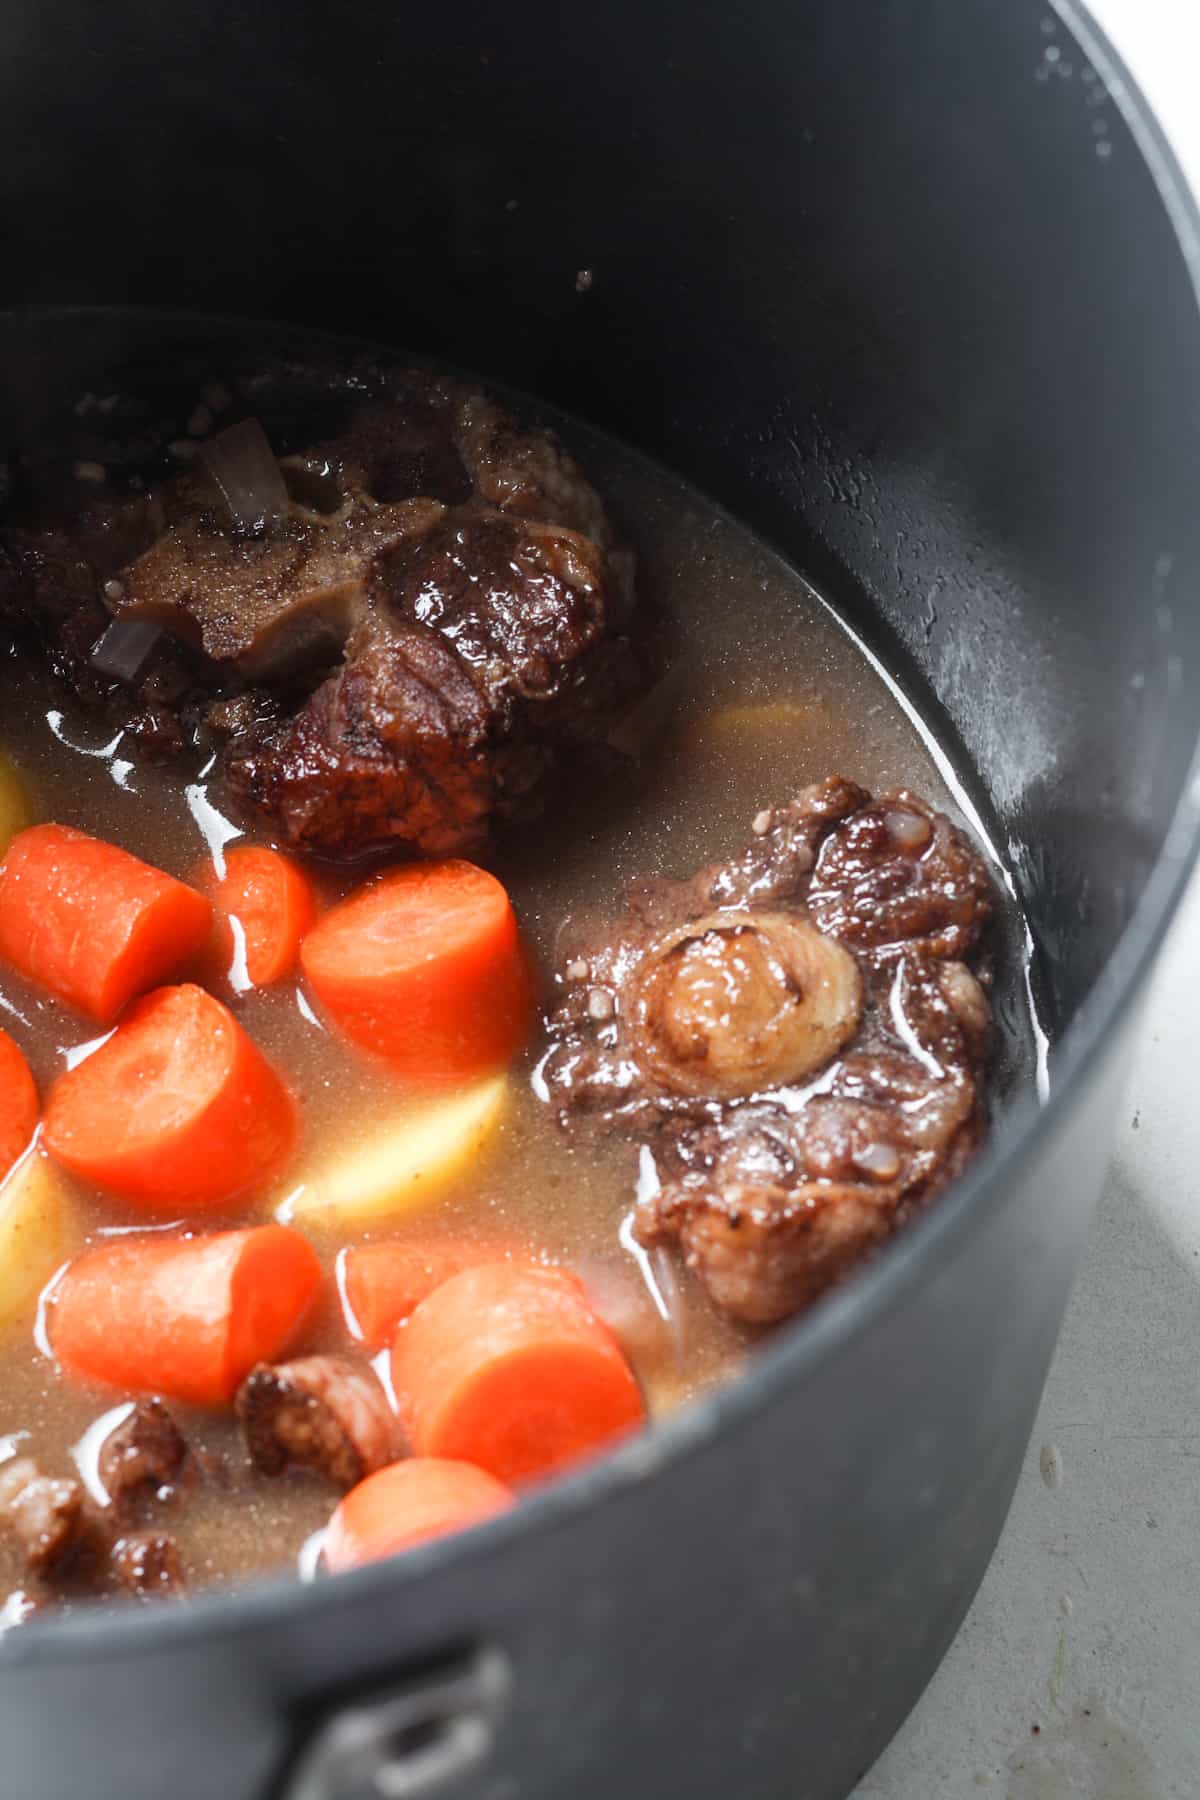 Meat stew in pot.